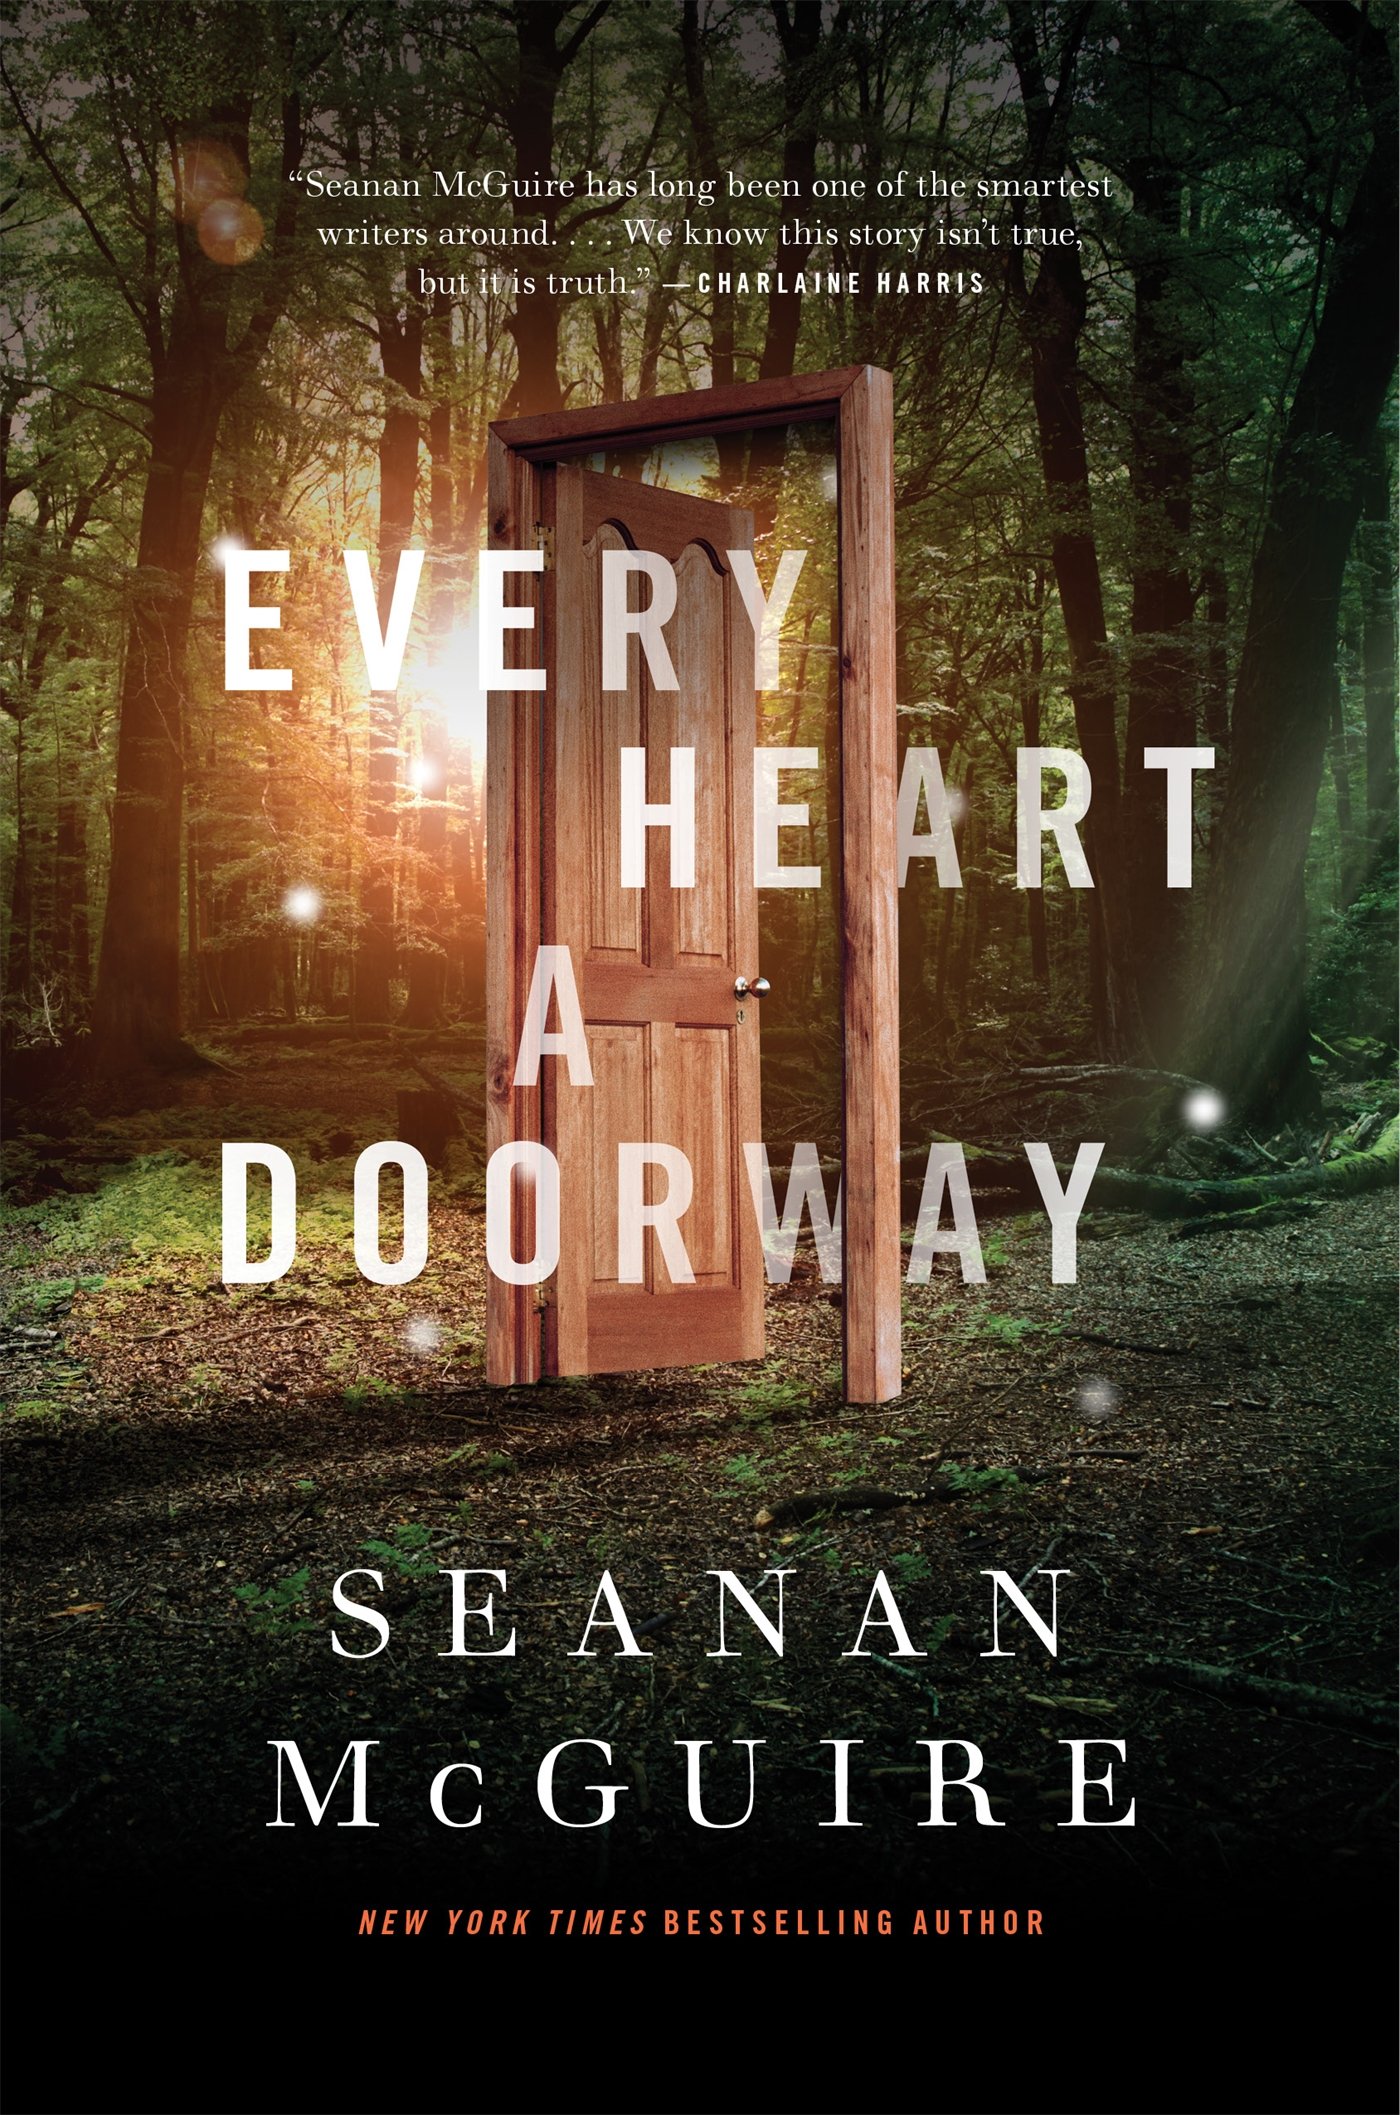 Wayward Children tome 1 de Seanan McGuire : Every Heart a Doorway